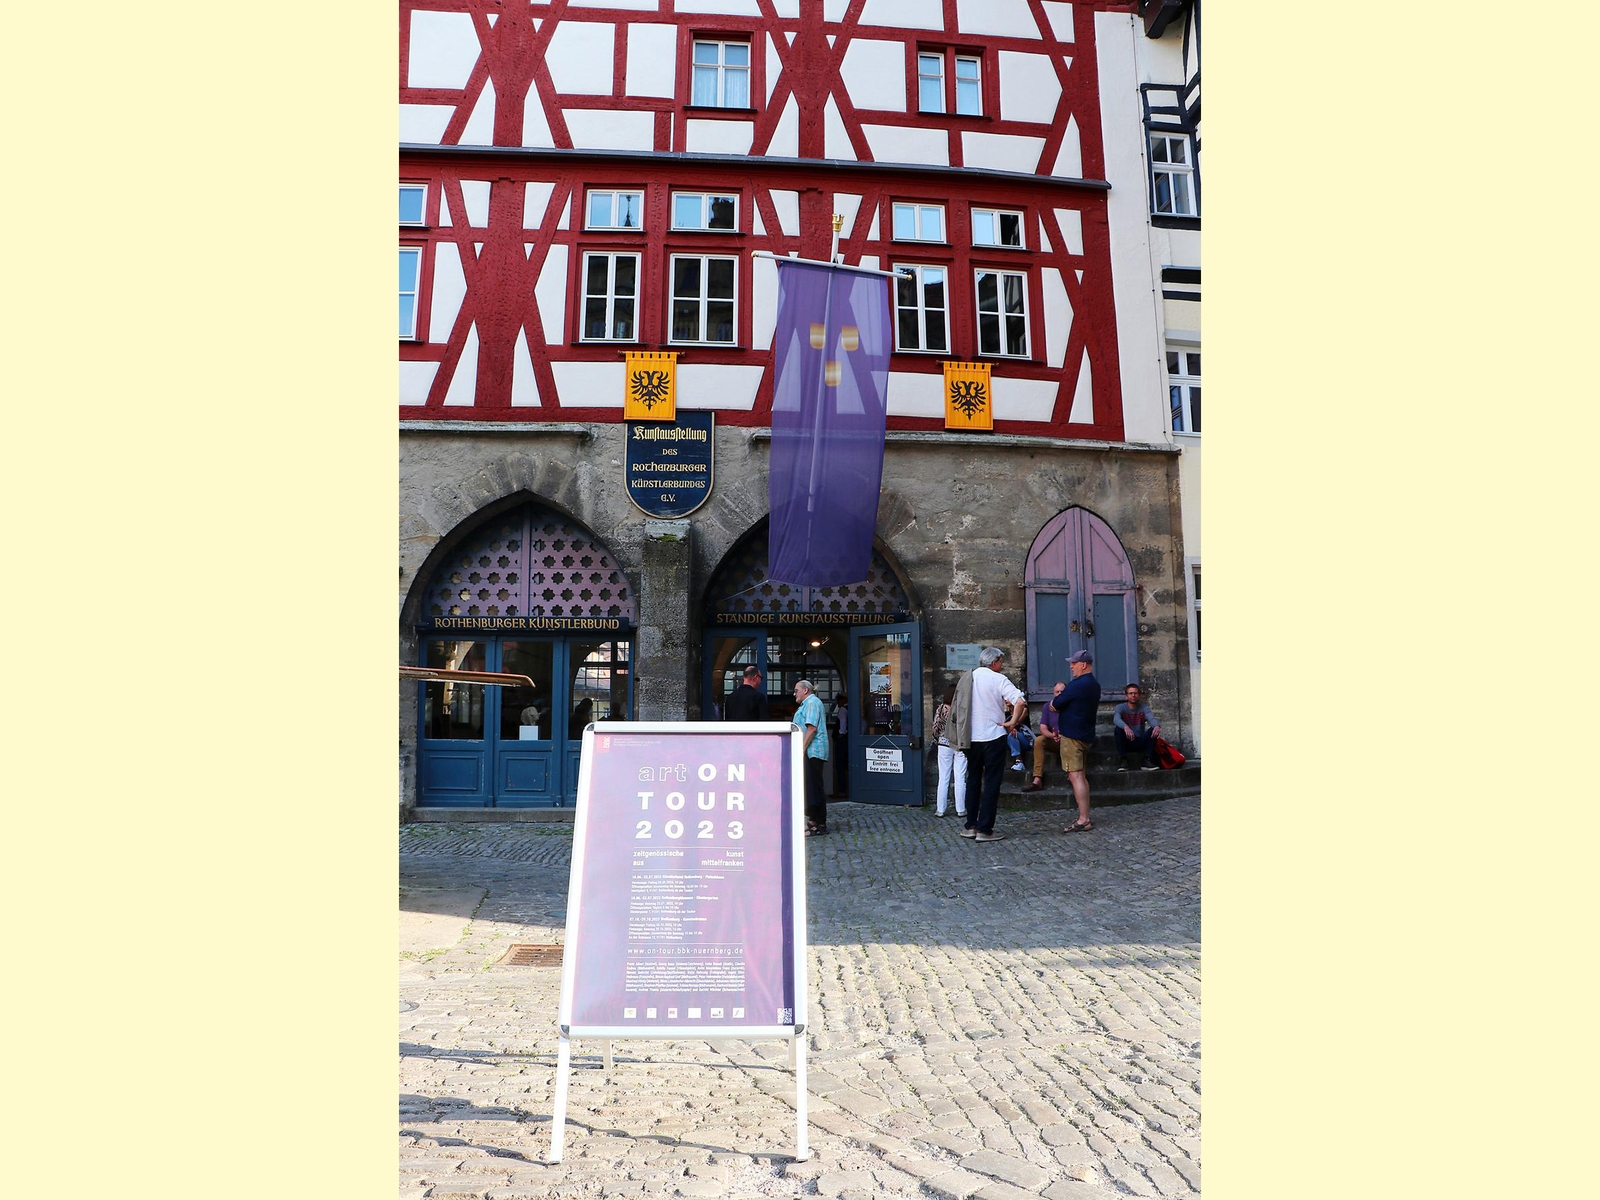 On-tour Rothenburg